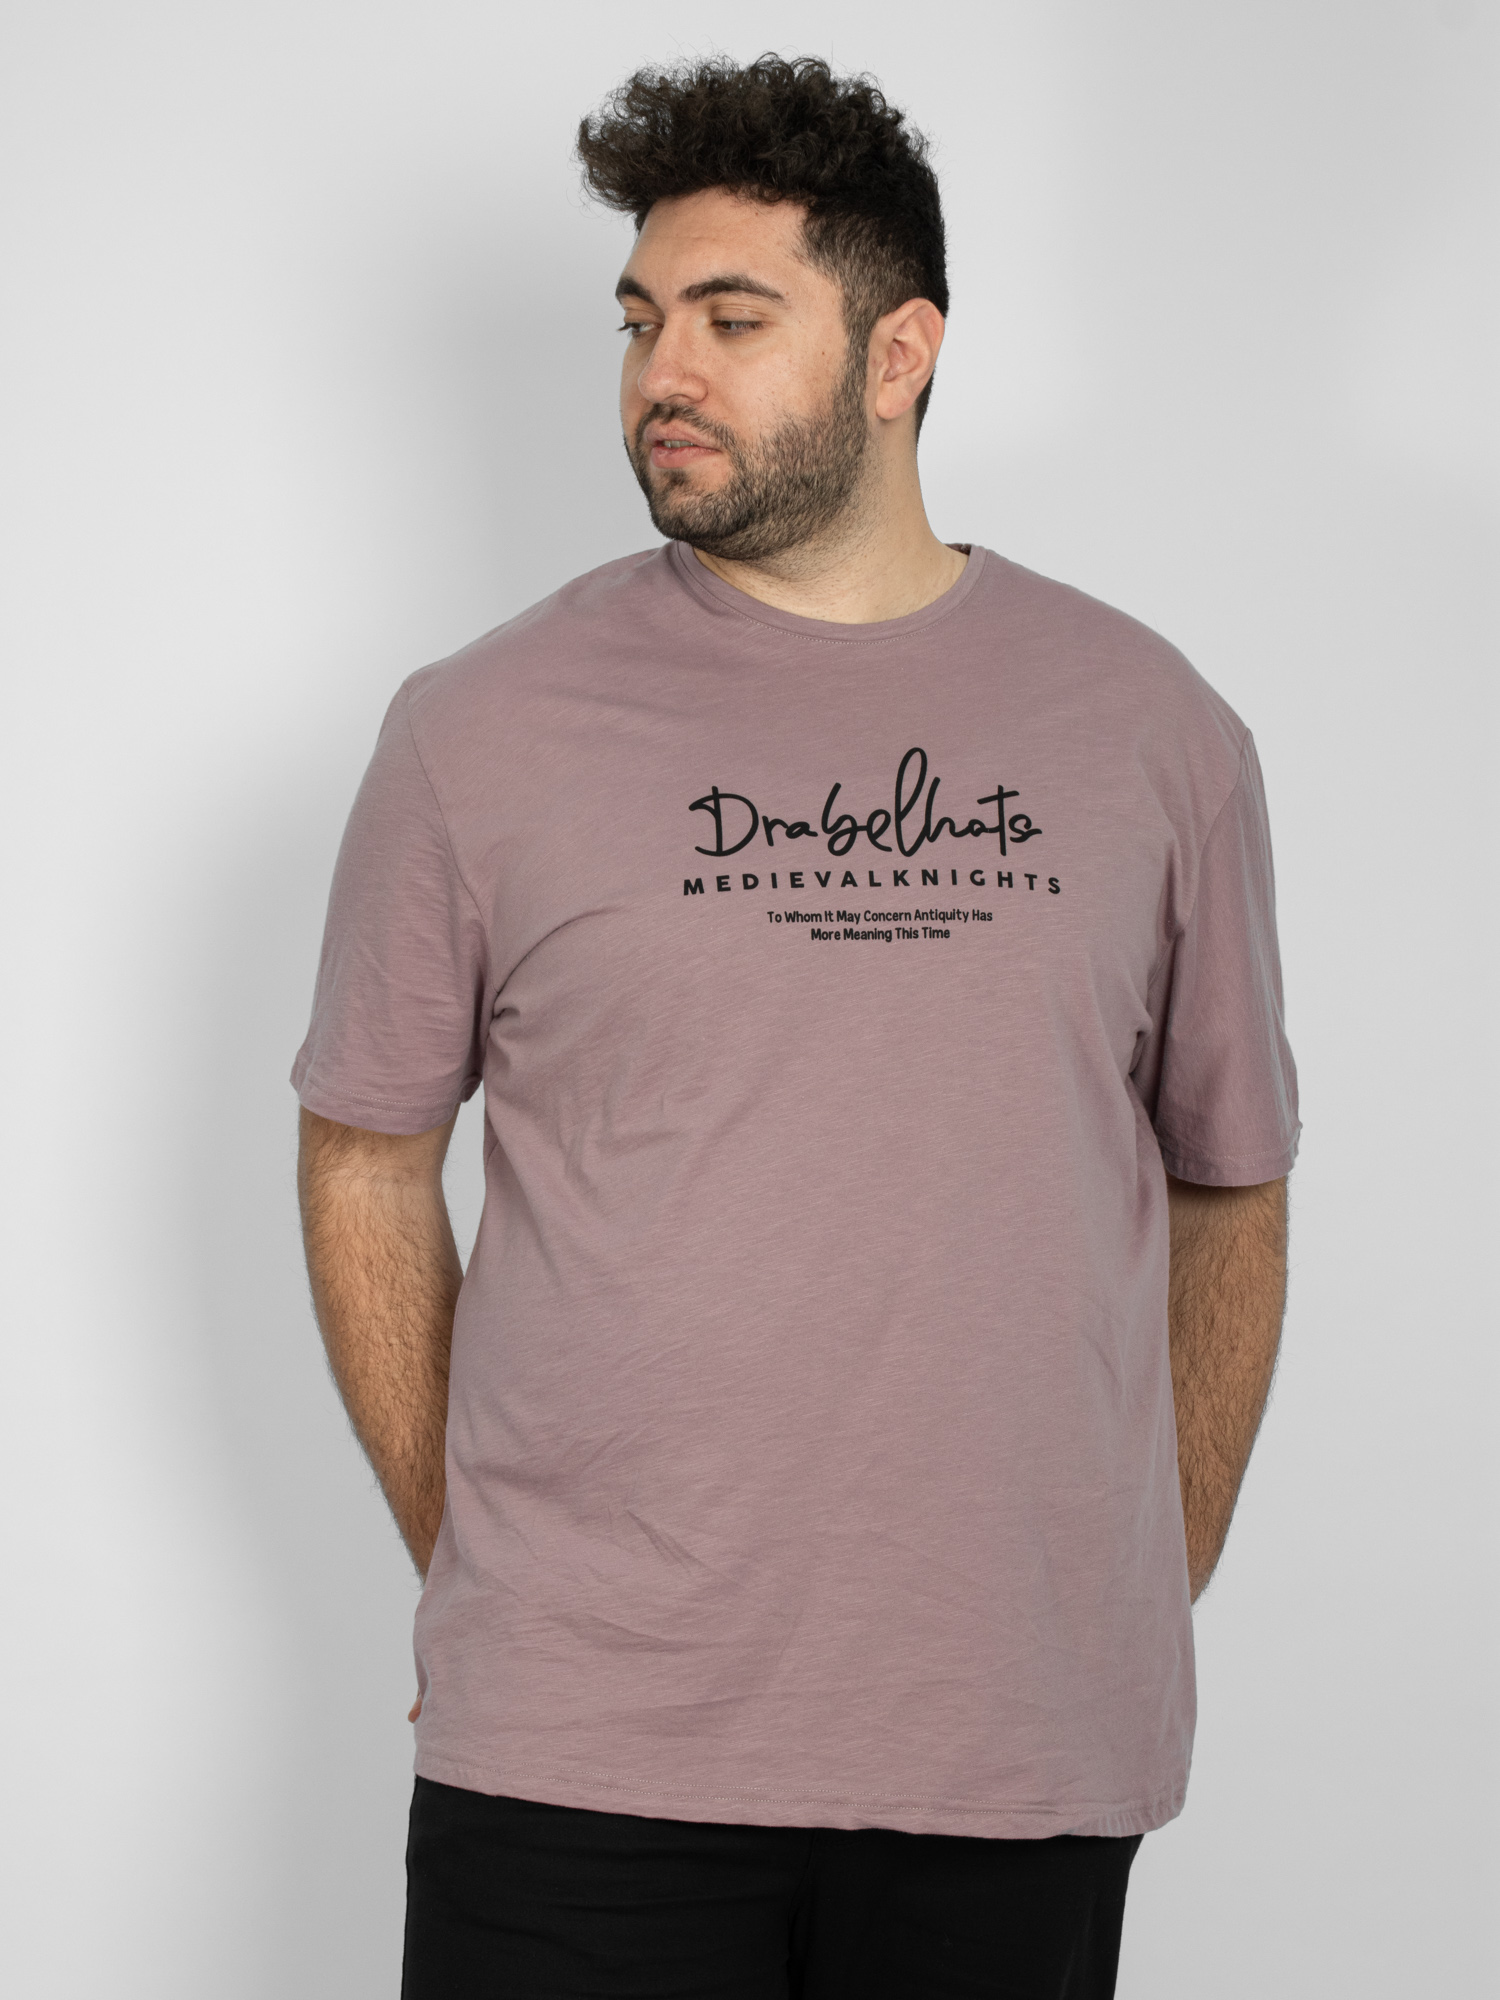 Ανδρική Μπλούζα T-shirt ''Medieval Knights'' Μεγάλο Μέγεθος - Ροζ